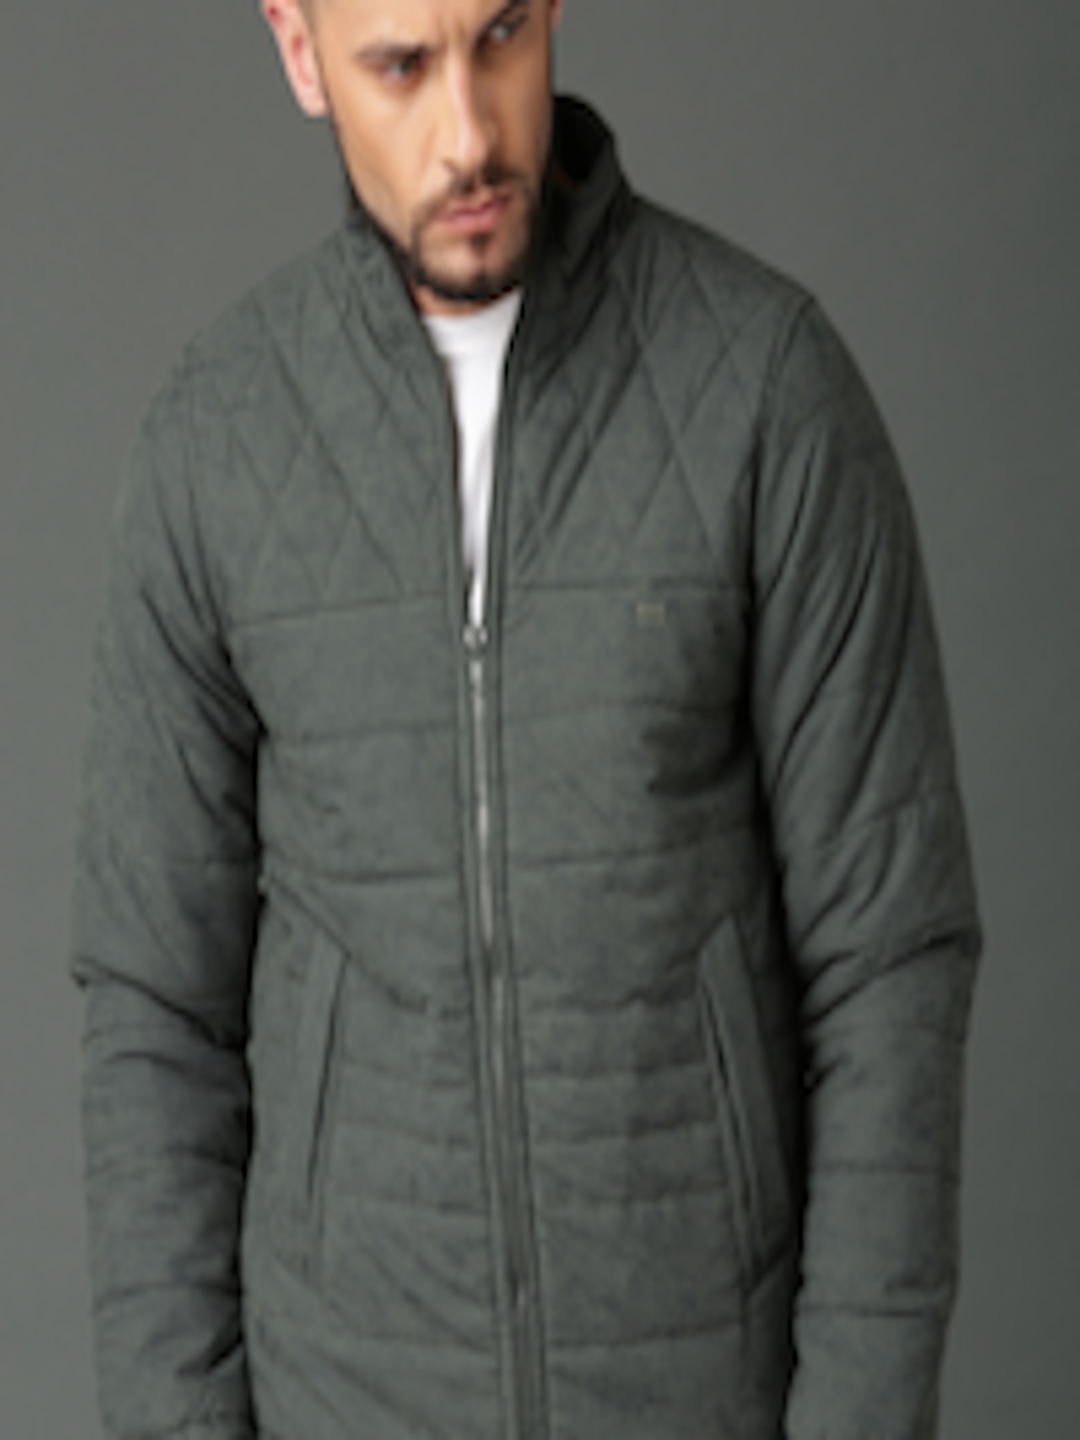 Buy Roadster Men Grey Solid Padded Jacket - Jackets for Men 5392173 ...